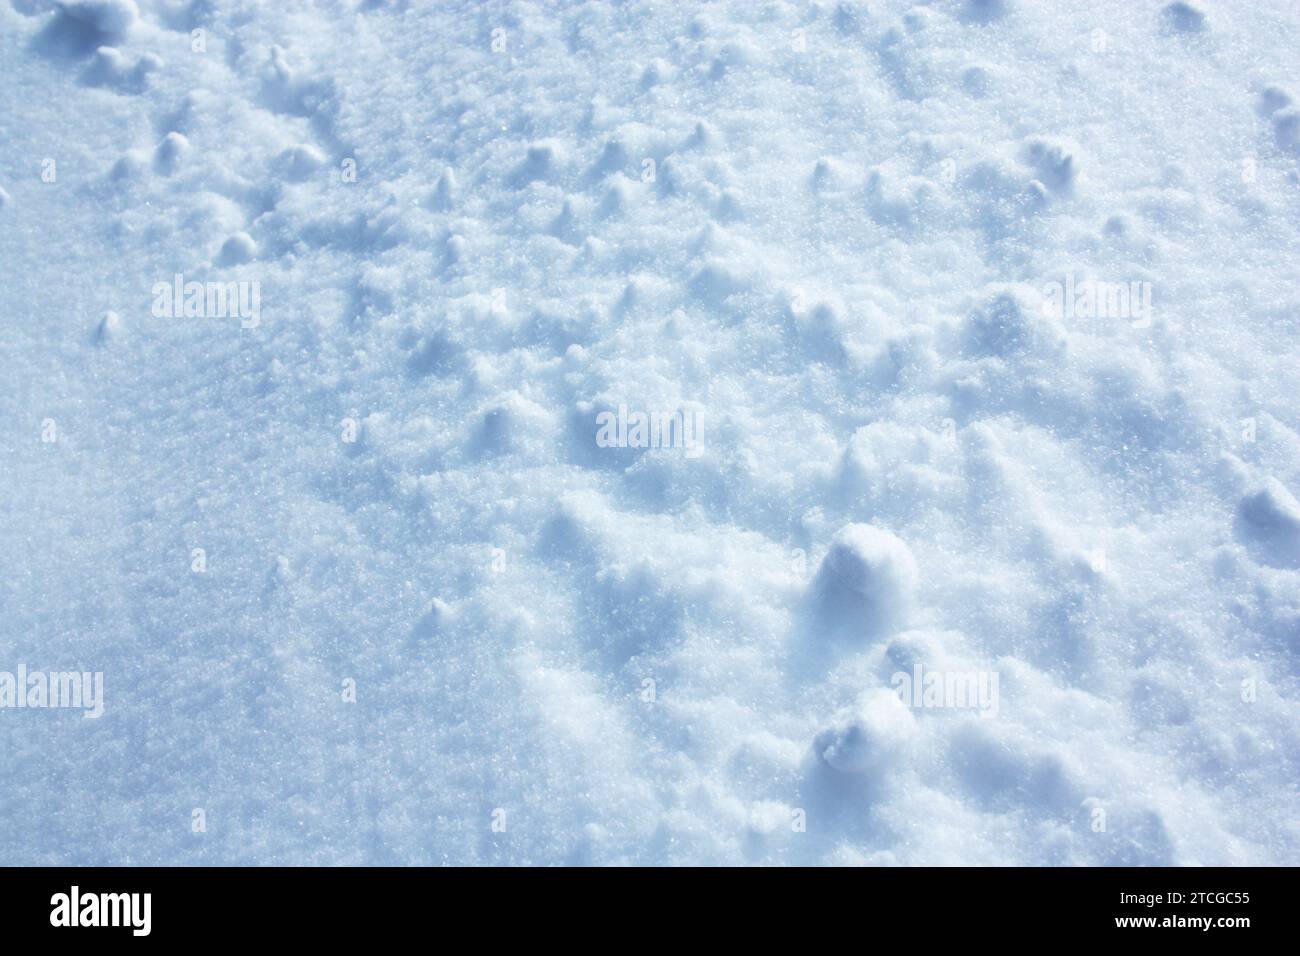 la consistenza della soffice neve invernale con grumi. Foto di alta qualità Foto Stock